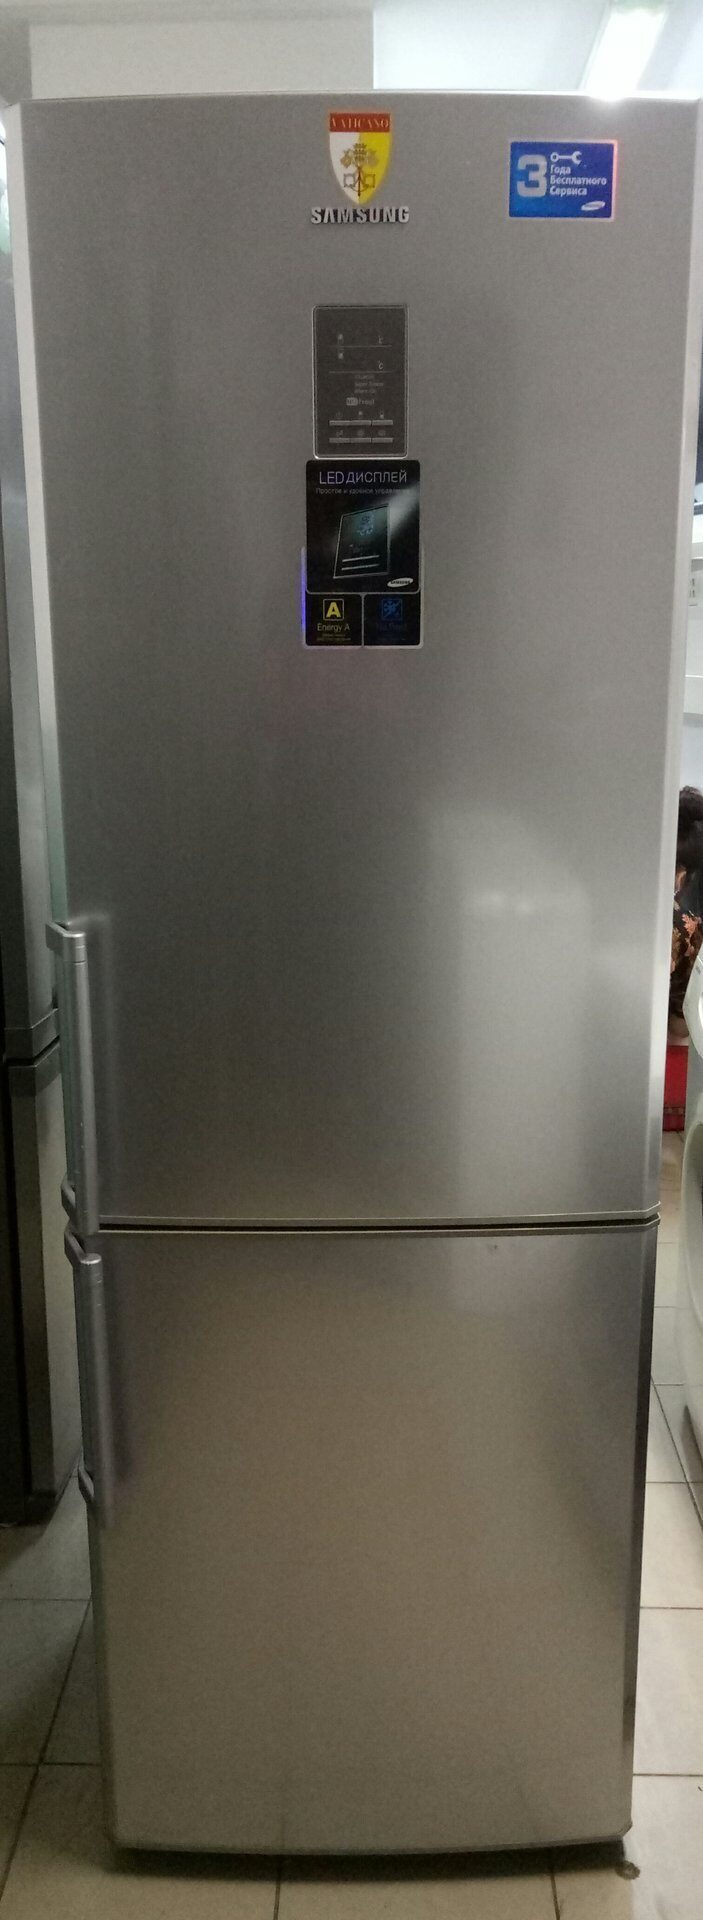 Samsung rl 34. Холодильник Samsung rl34. Холодильники самсунг rl34egts1. Холодильник Samsung rl34egts1(no Frost). Samsung RL 34c600cs9.